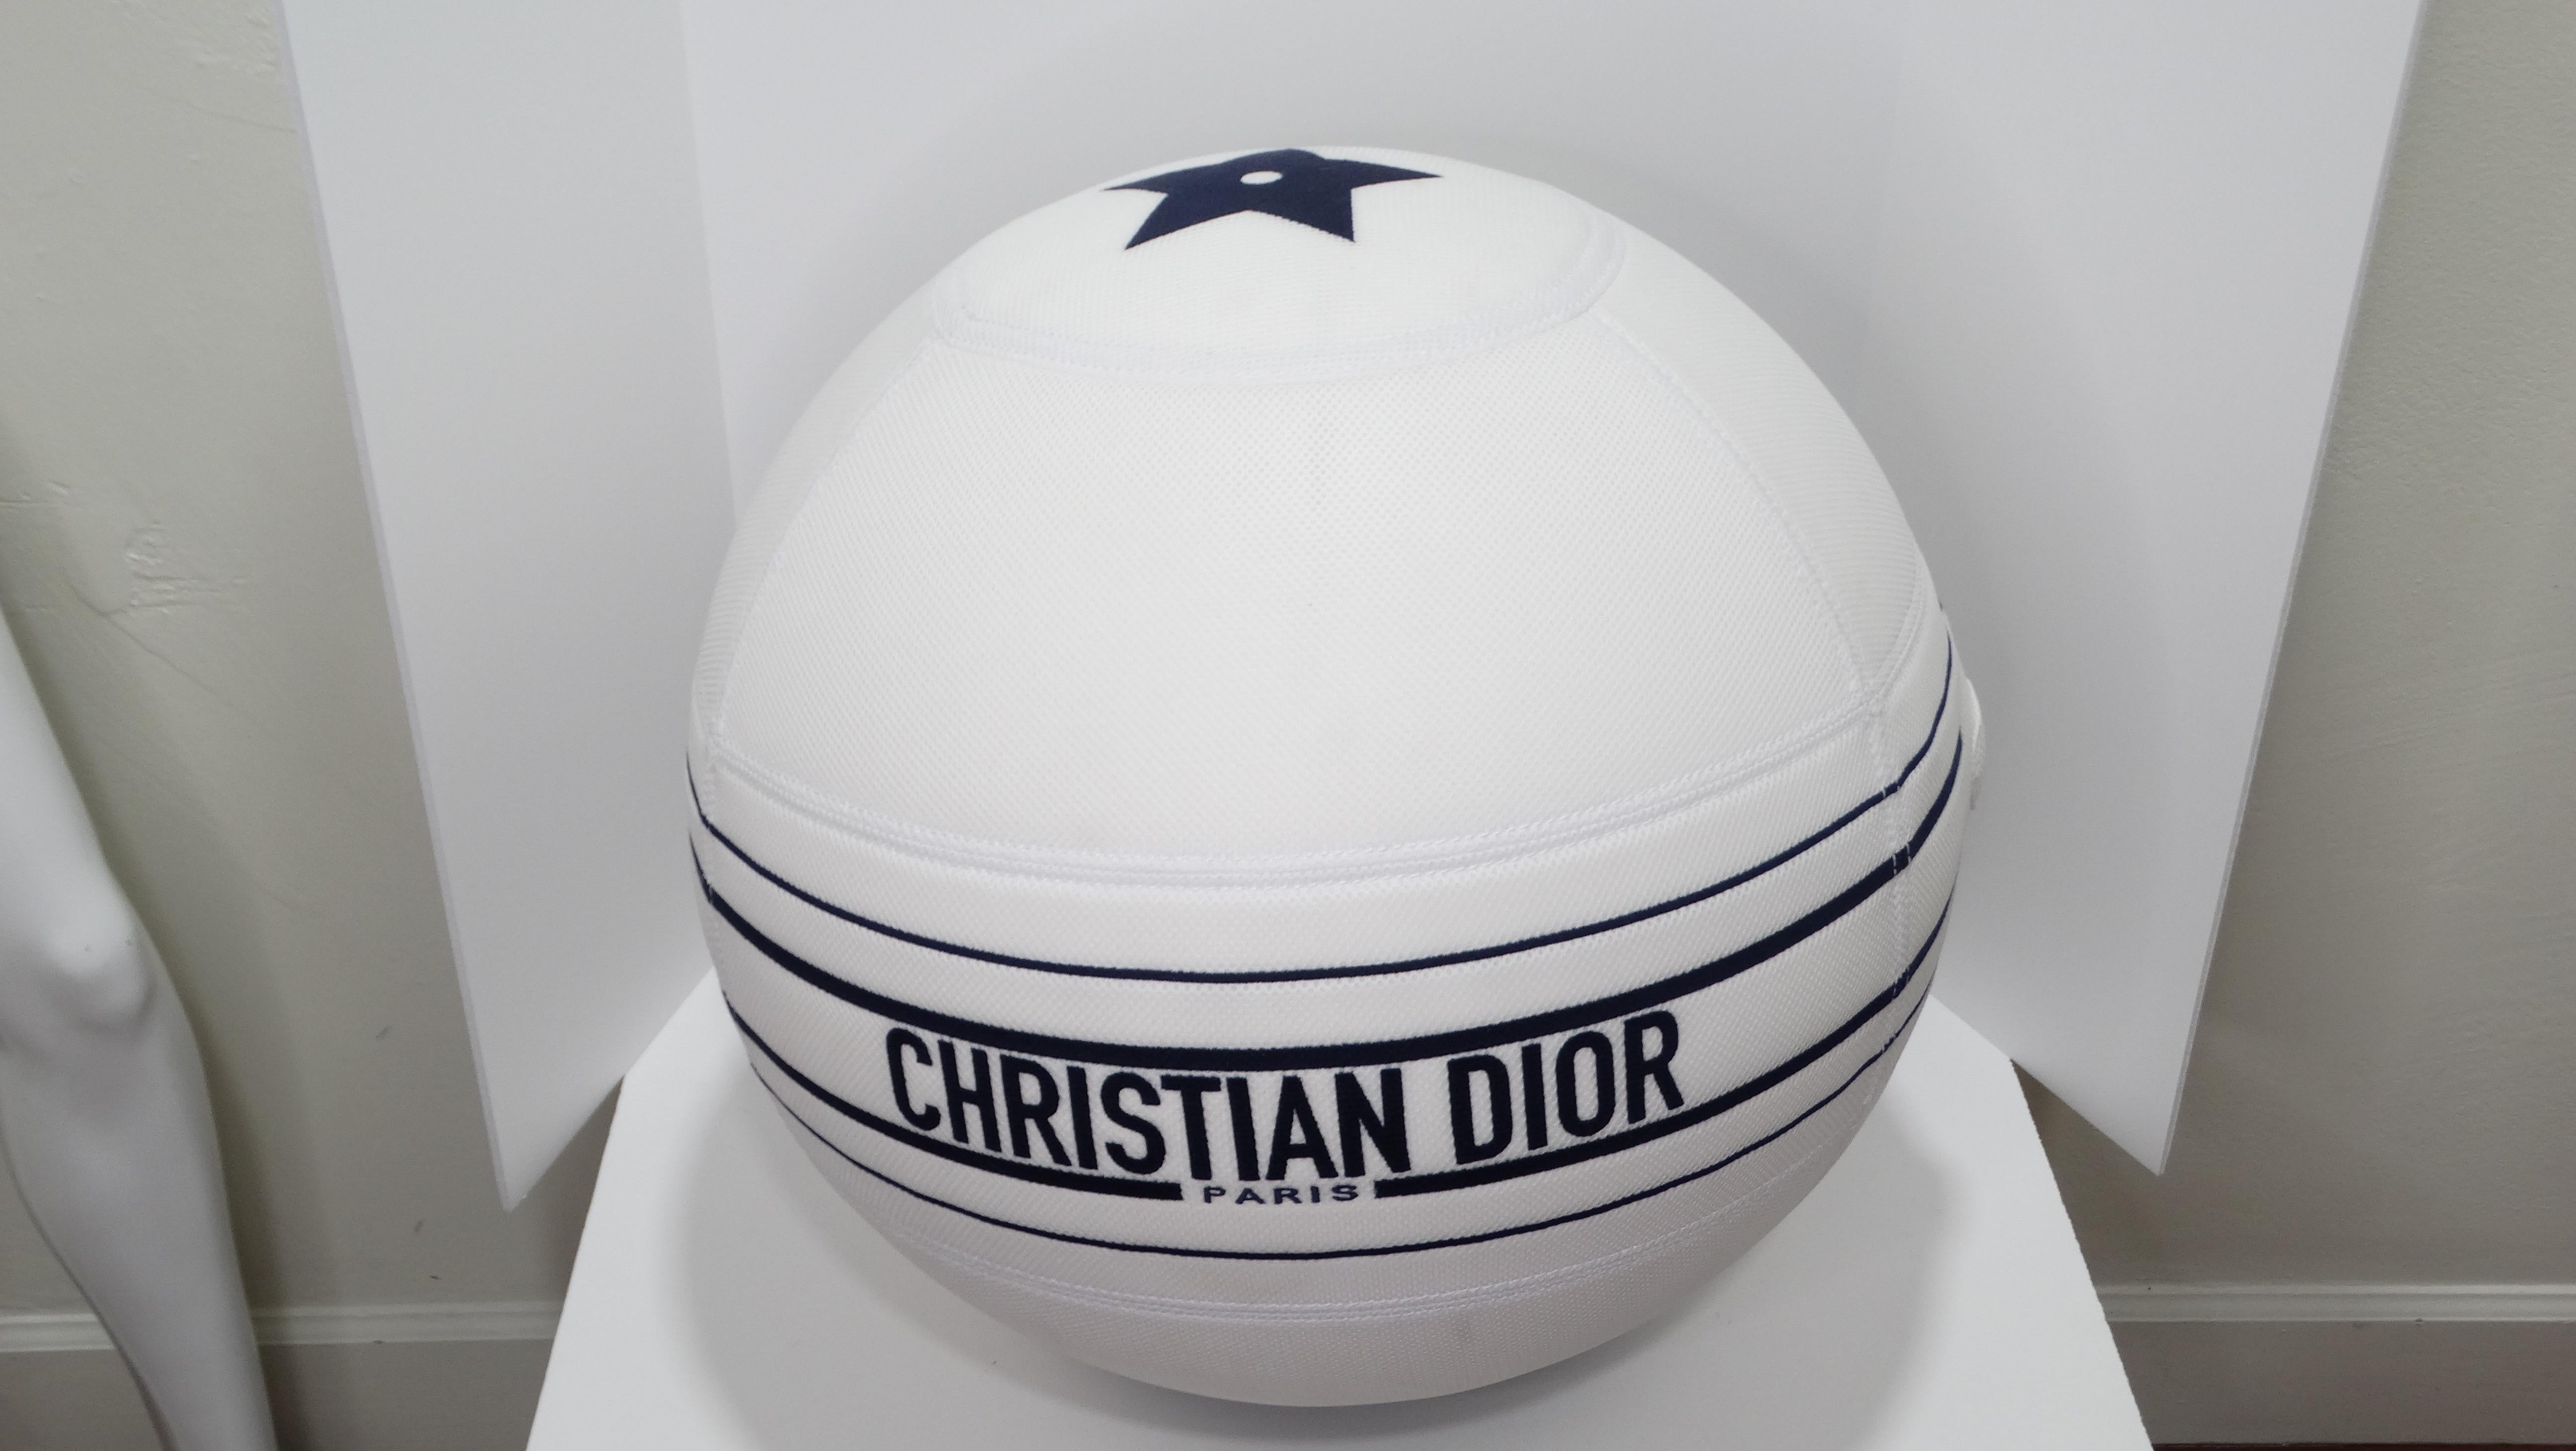 Verbessern Sie Ihre Trainings- und Wohnkultur mit diesem absolut unglaublichen Technogym-Gymnastikball mit weißem Logo von Dior für Dior Yoga 1D129 in limitierter Auflage! Großer weißer Medizinball mit einem charakteristischen Dior-Stern an der